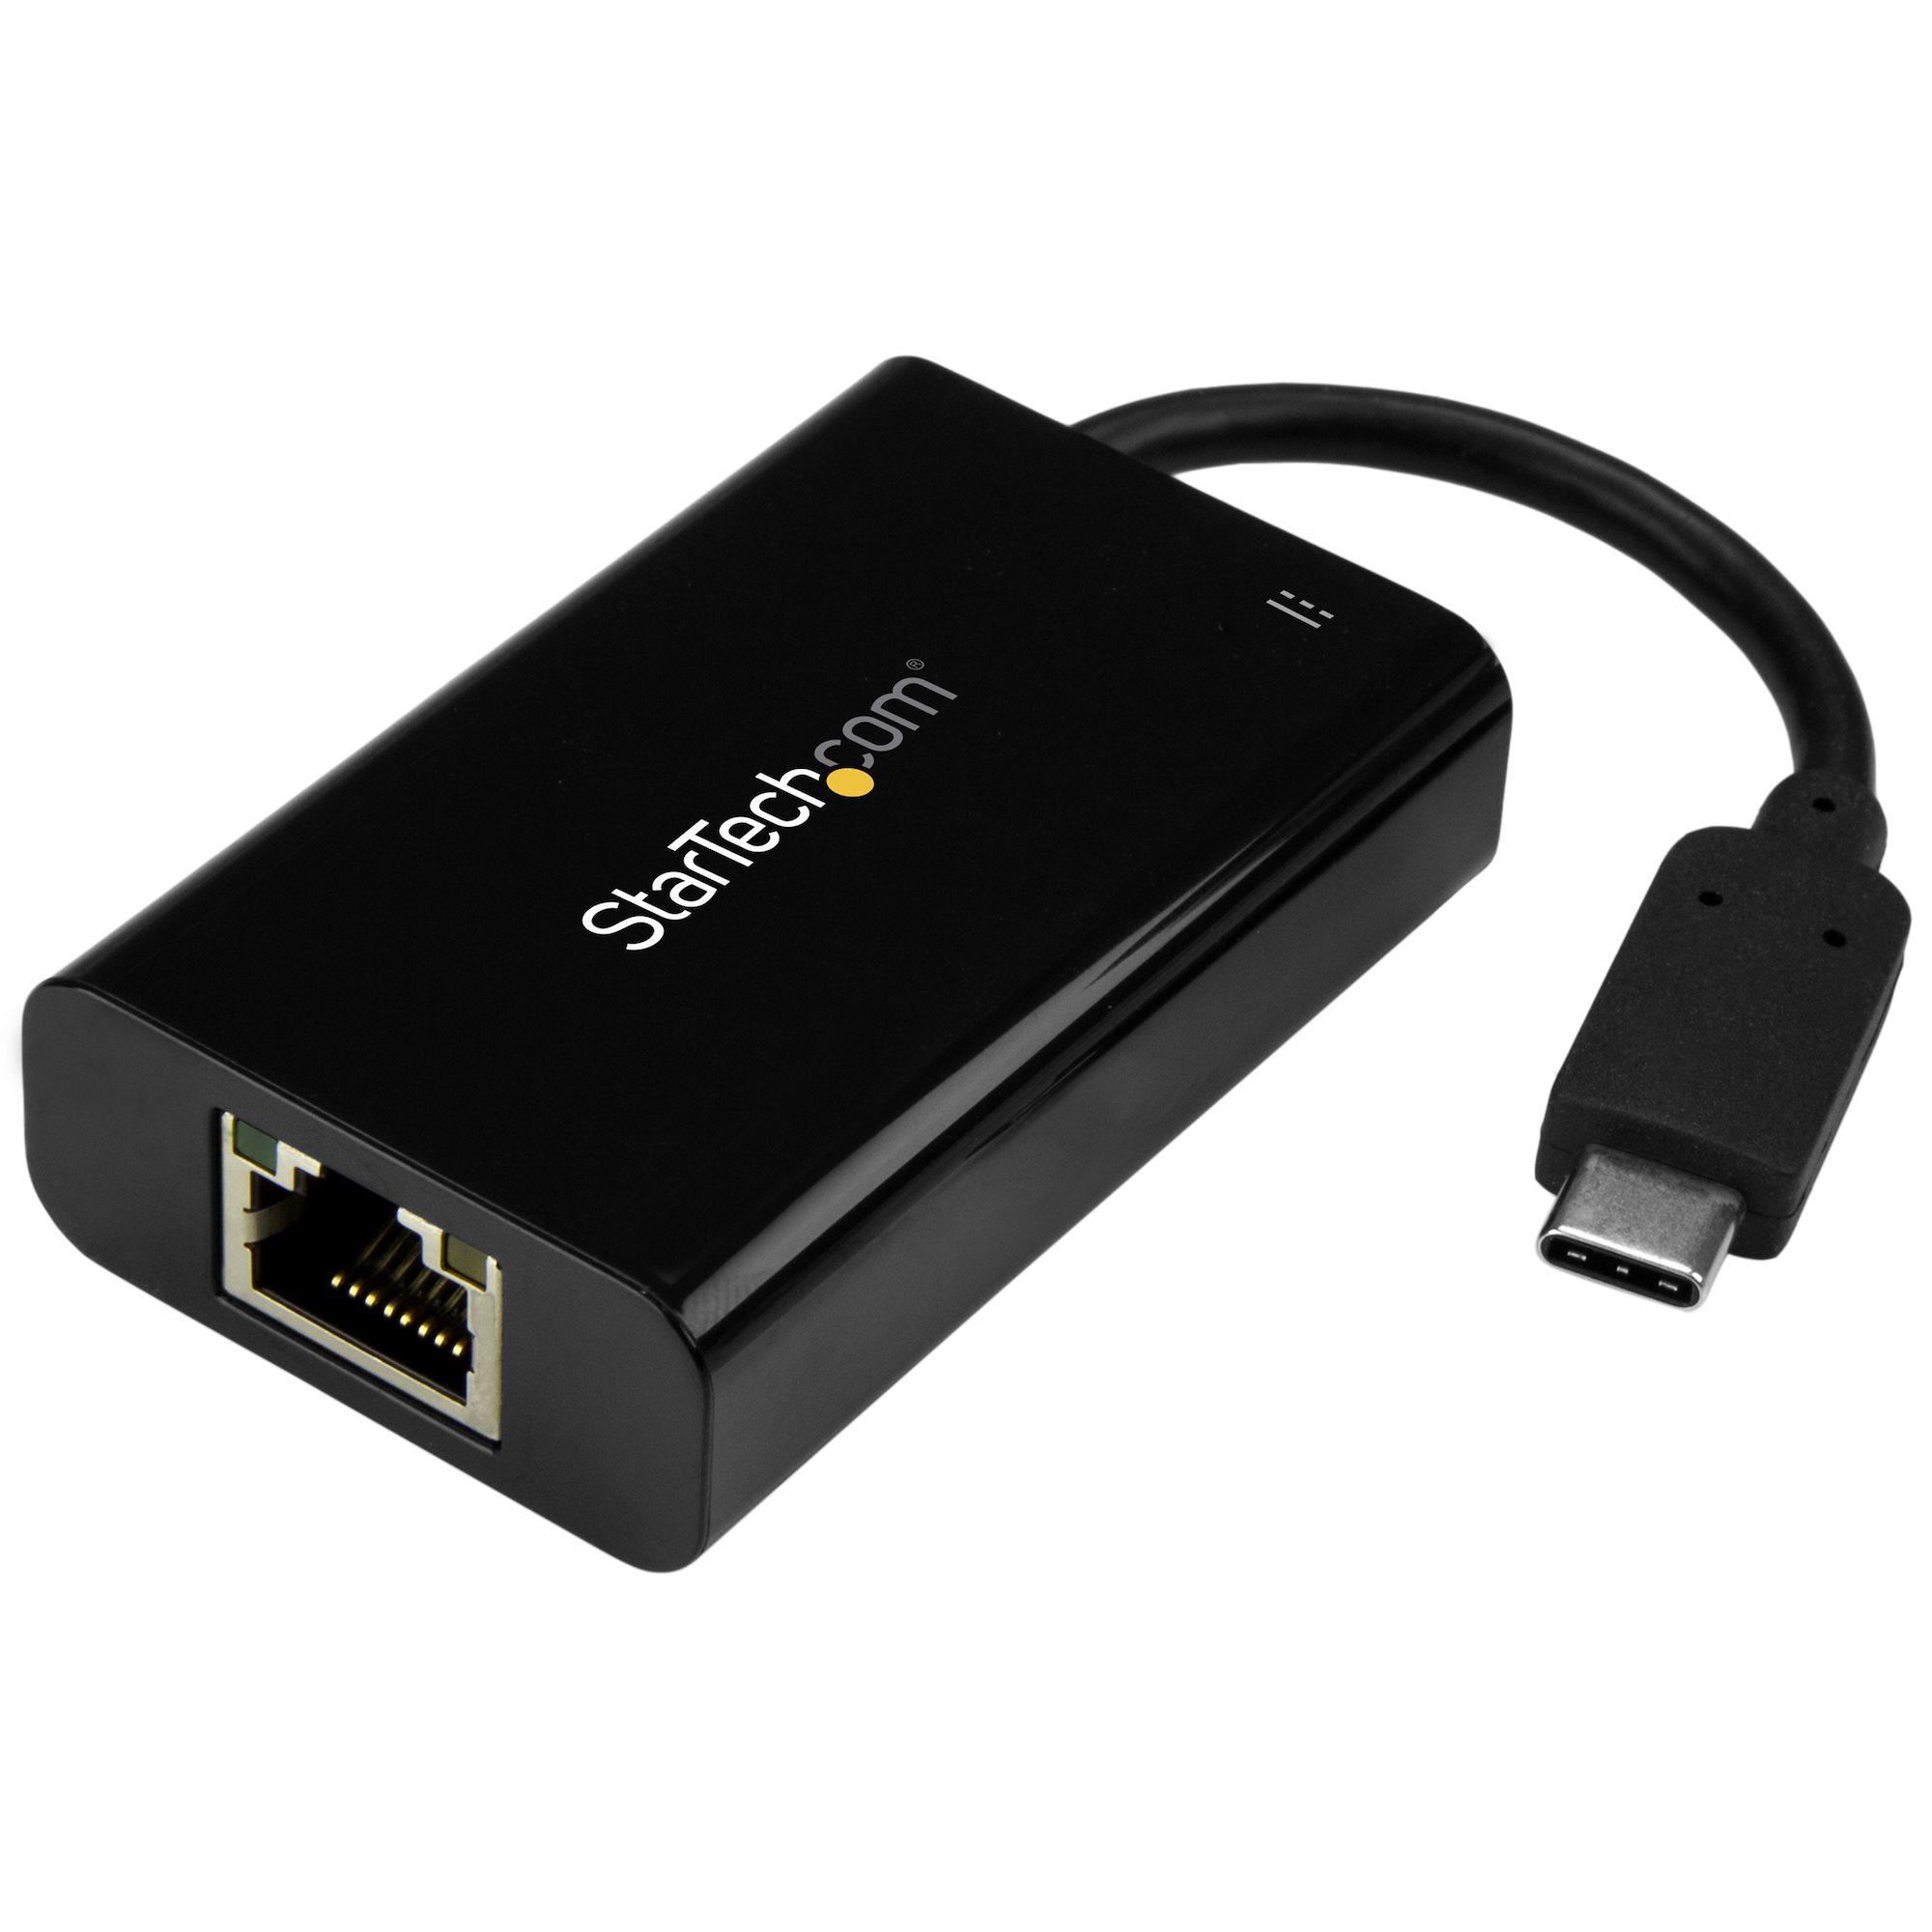 daar ben ik het mee eens Gluren schouder USB C to Gigabit Ethernet LAN Adapter PD - USB and Thunderbolt Network  Adapters | StarTech.com